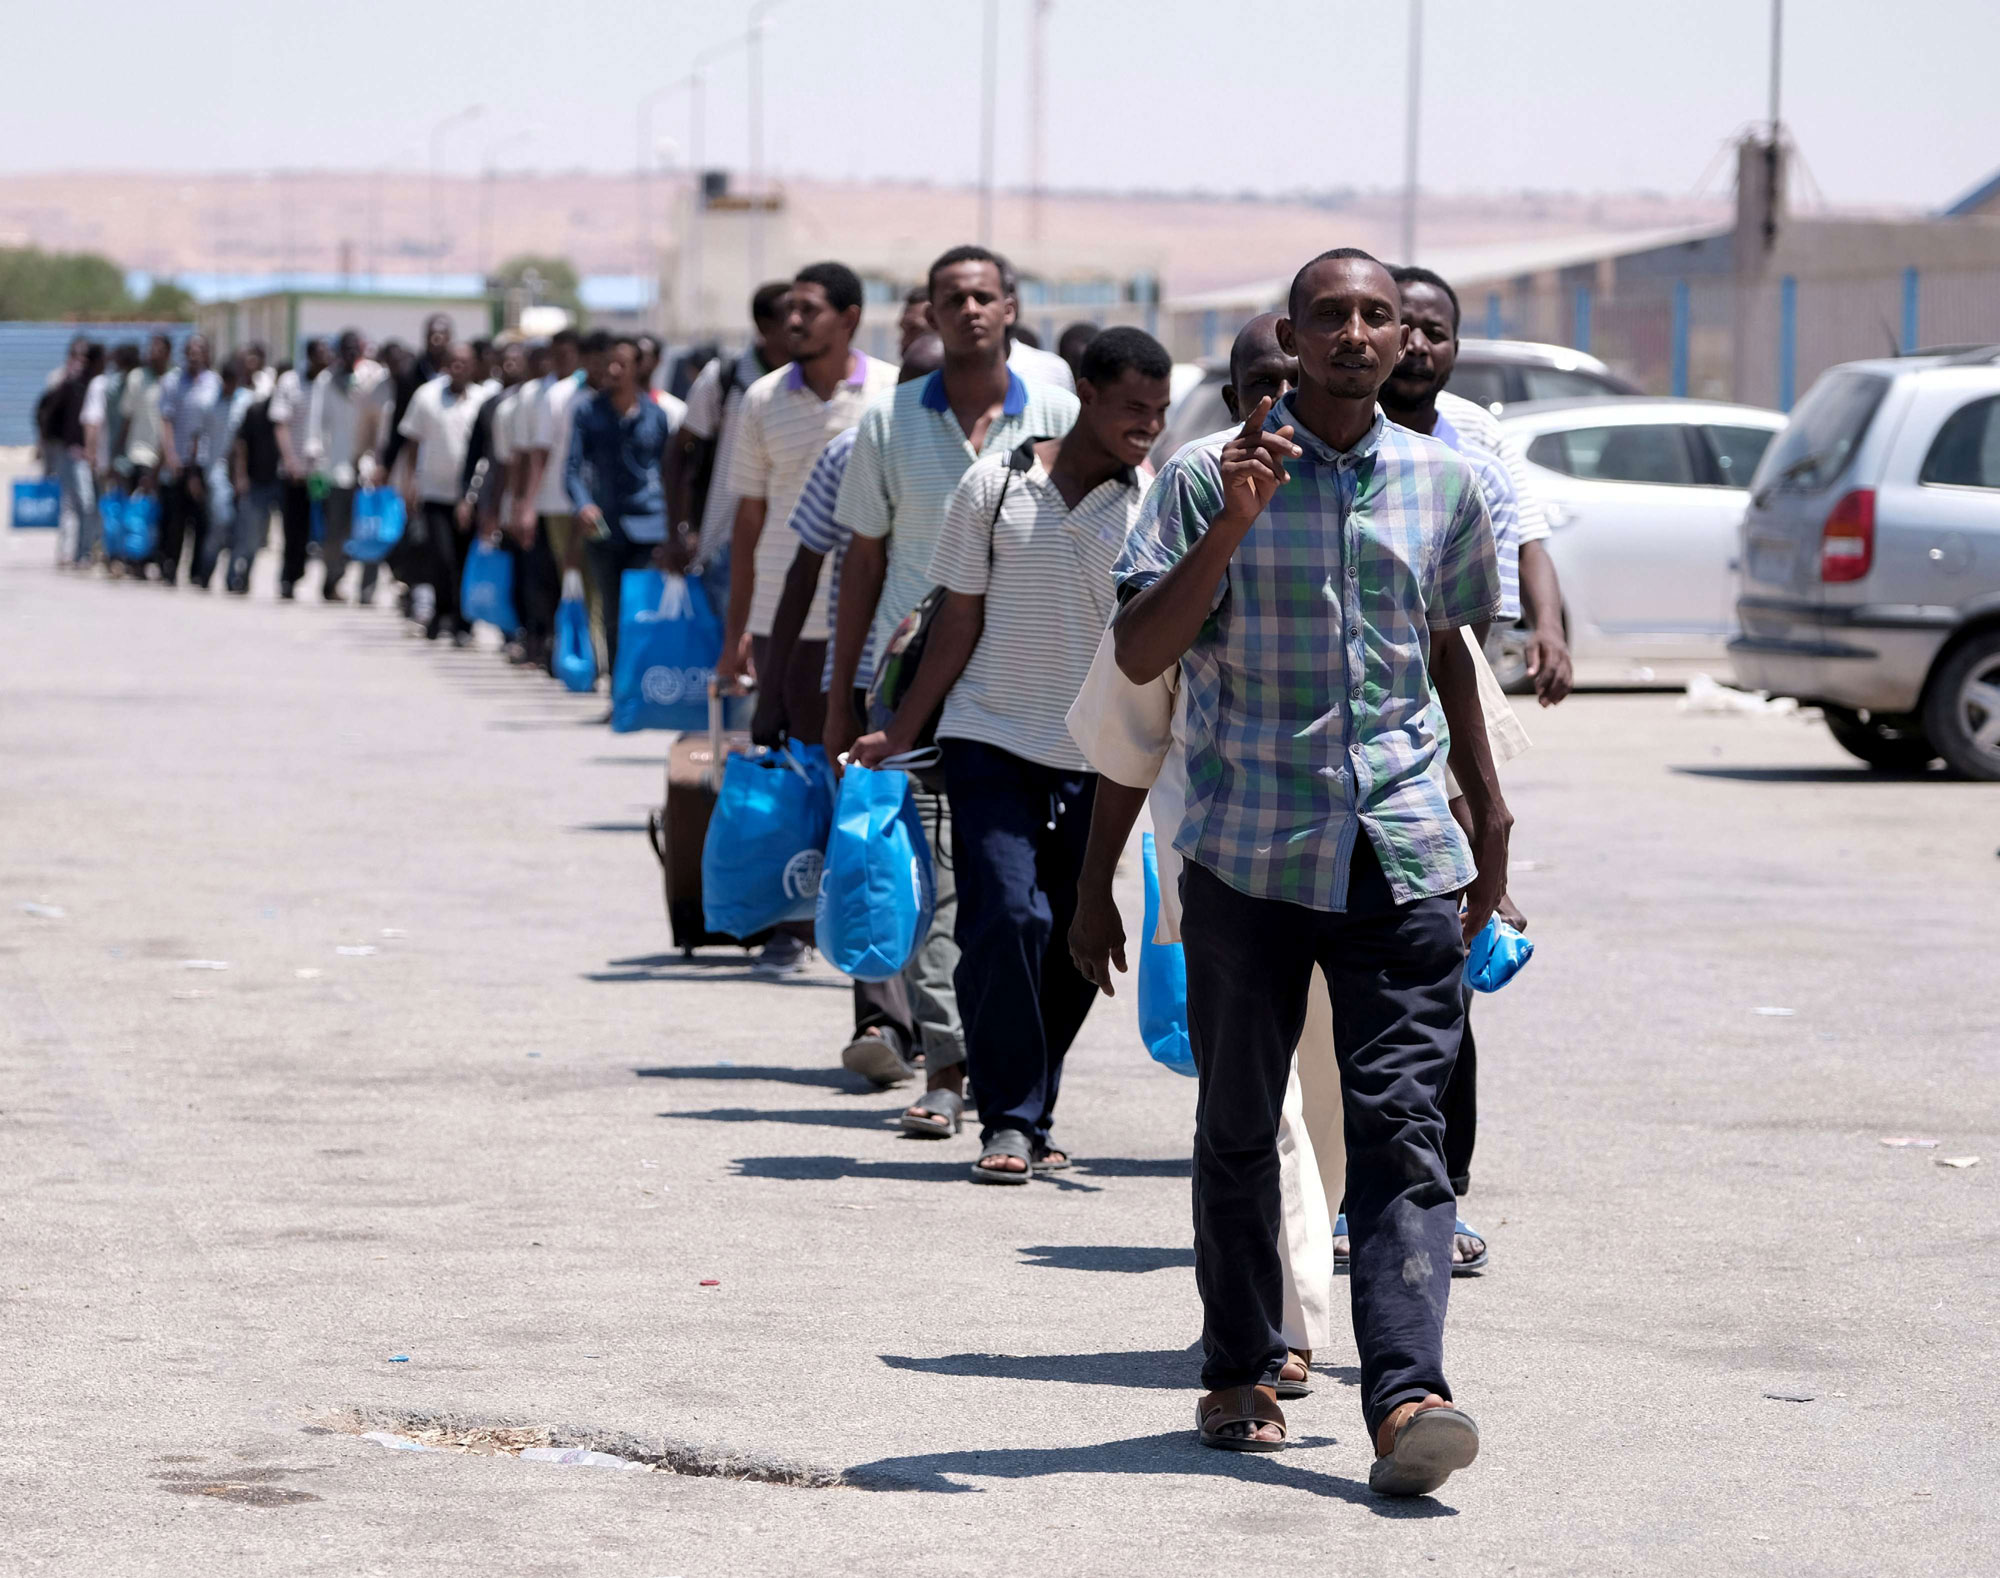 احتجاز وايواء المهاجرين في ليبيا معضلة تثقل على حكومة الوفاق الليبية